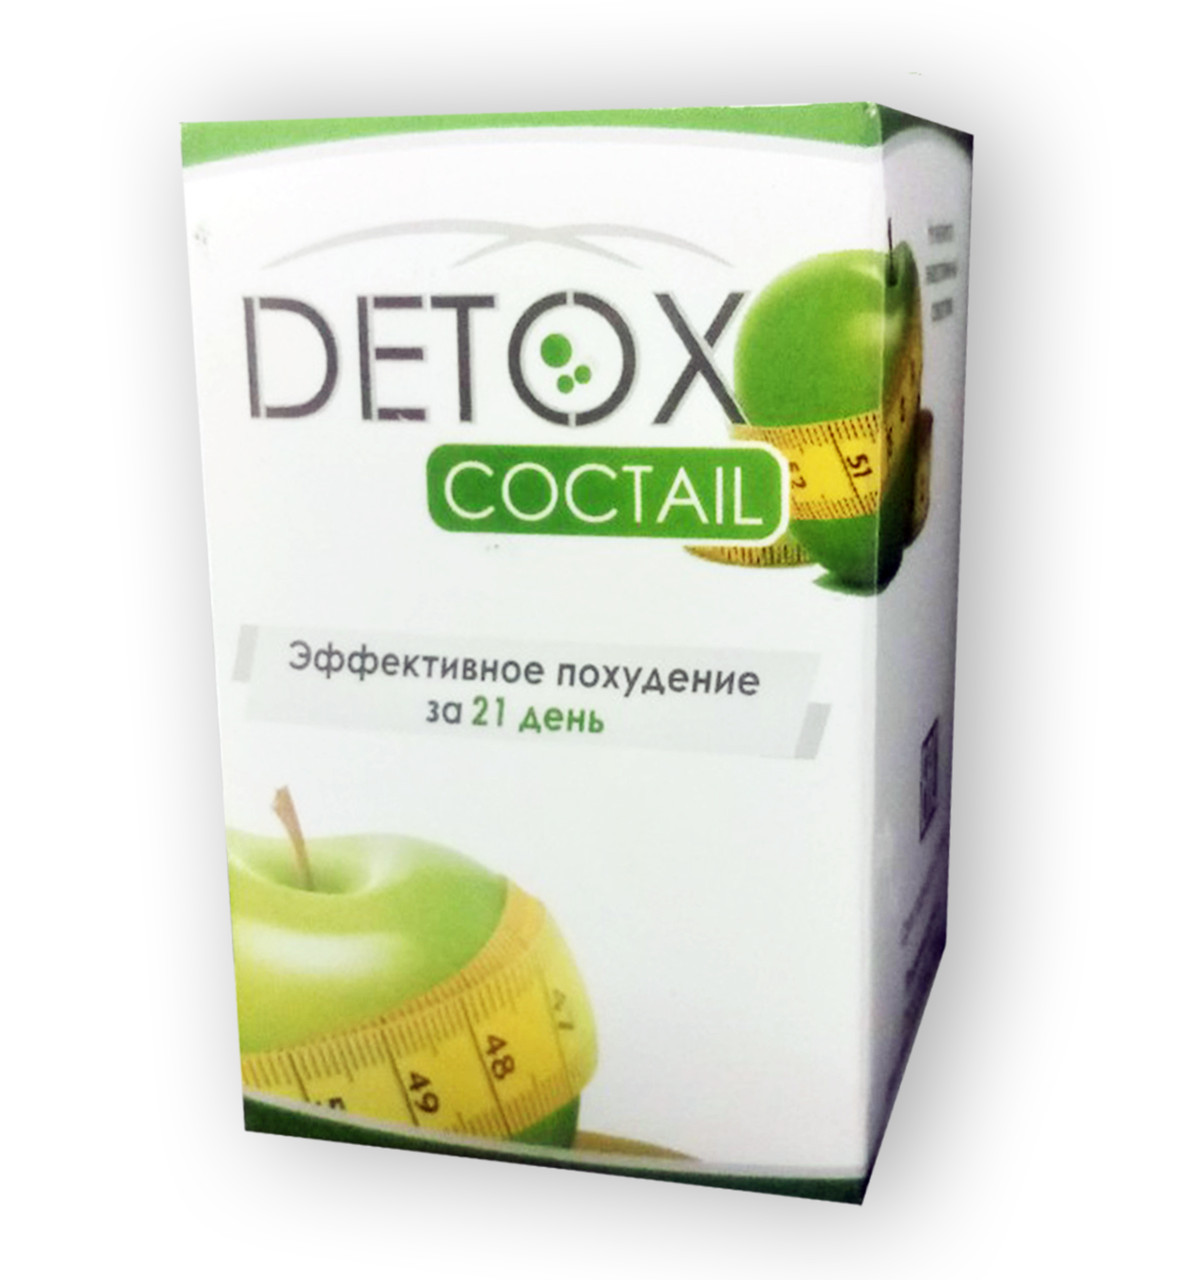 

Detox Cocktail - Коктейль для похудения и очищения организма (Детокс Коктейль)